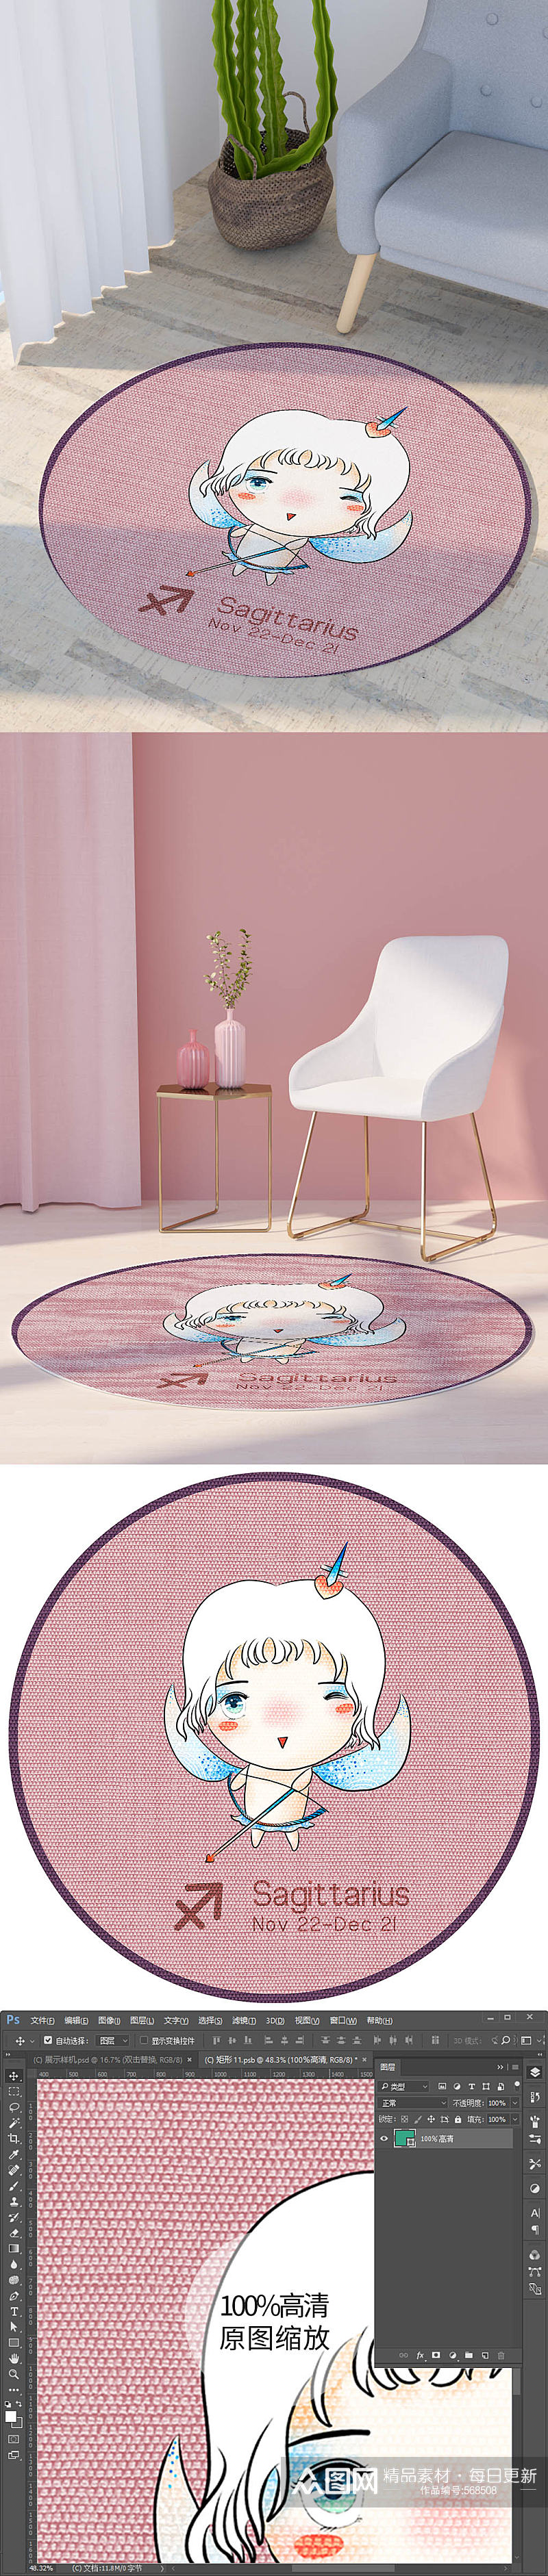 粉色可爱星座画芯图案圆形地毯射手座印花素材